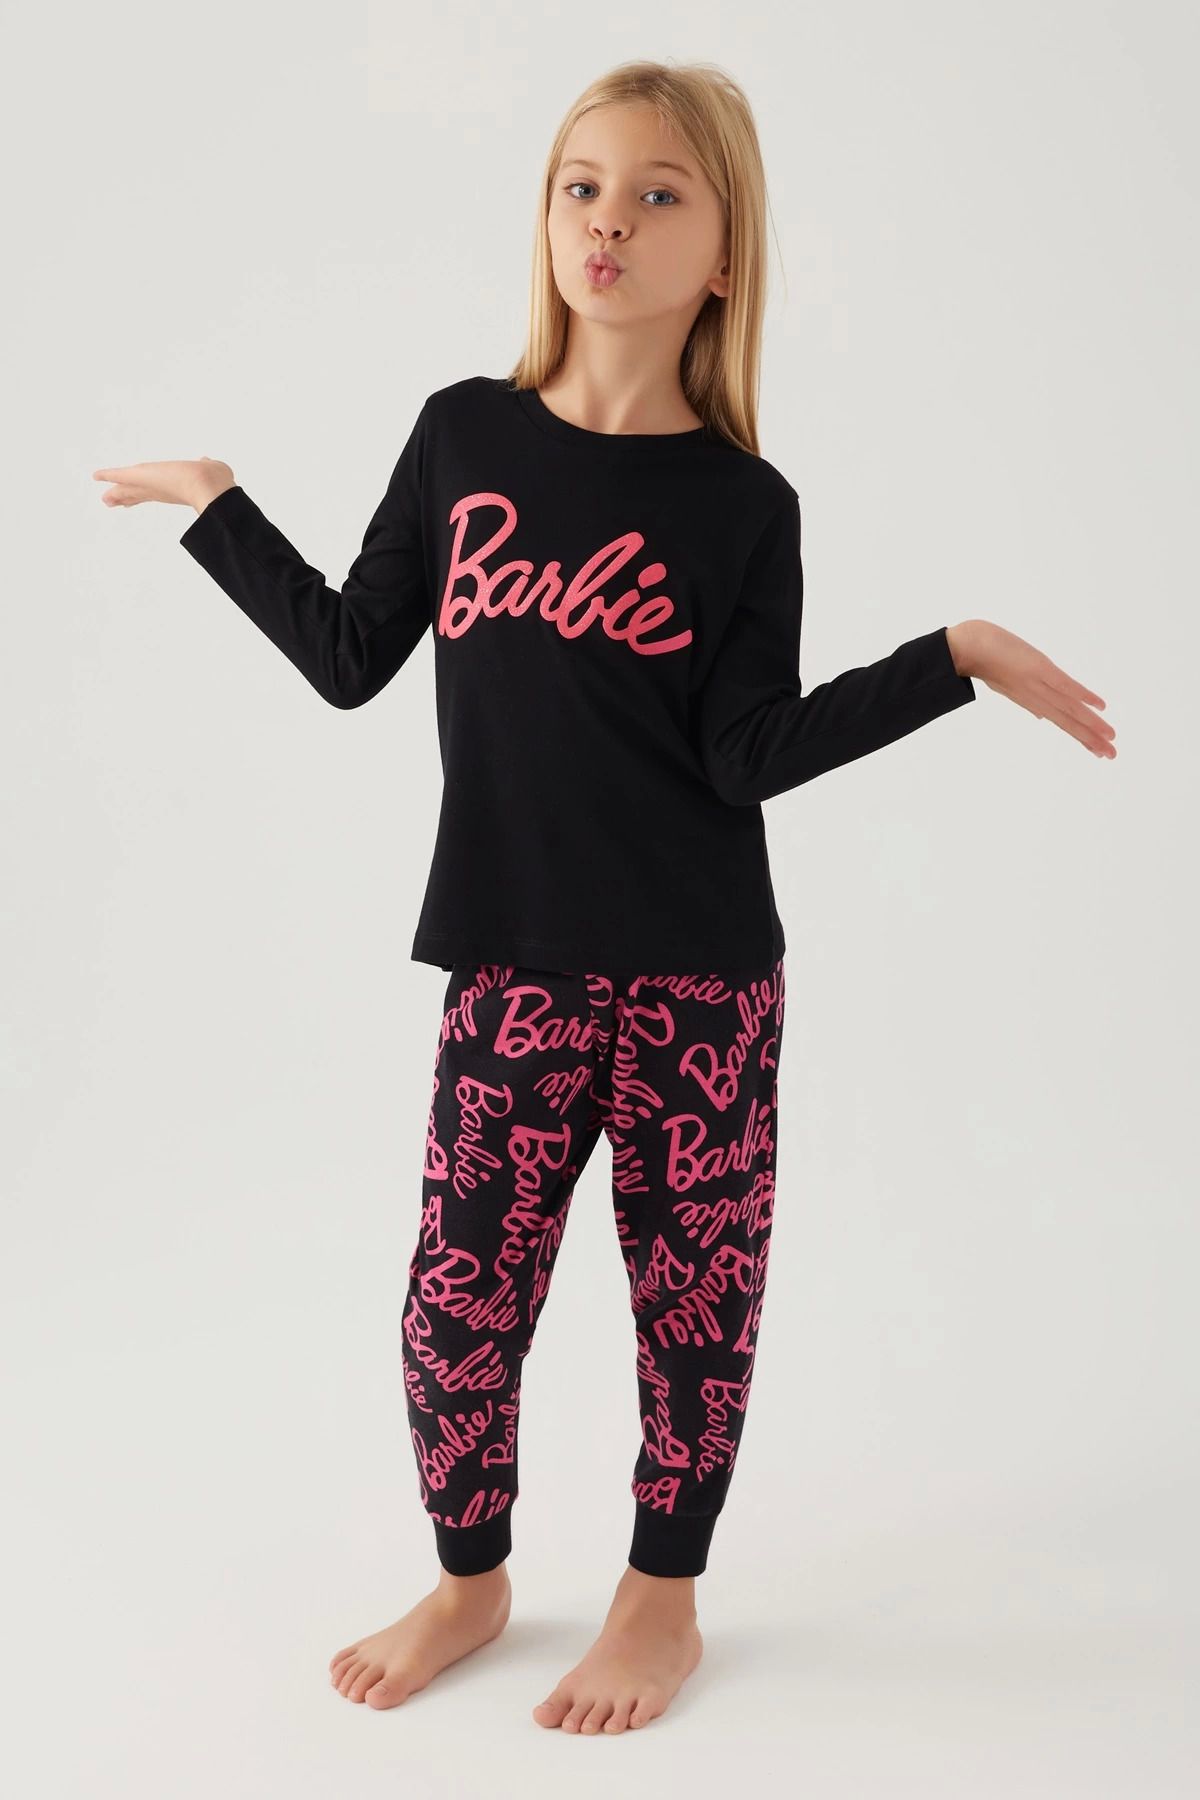 Pierre Cardin Barbie L1766-g Kız Çocuk Uzun Kol Pijama Takımı